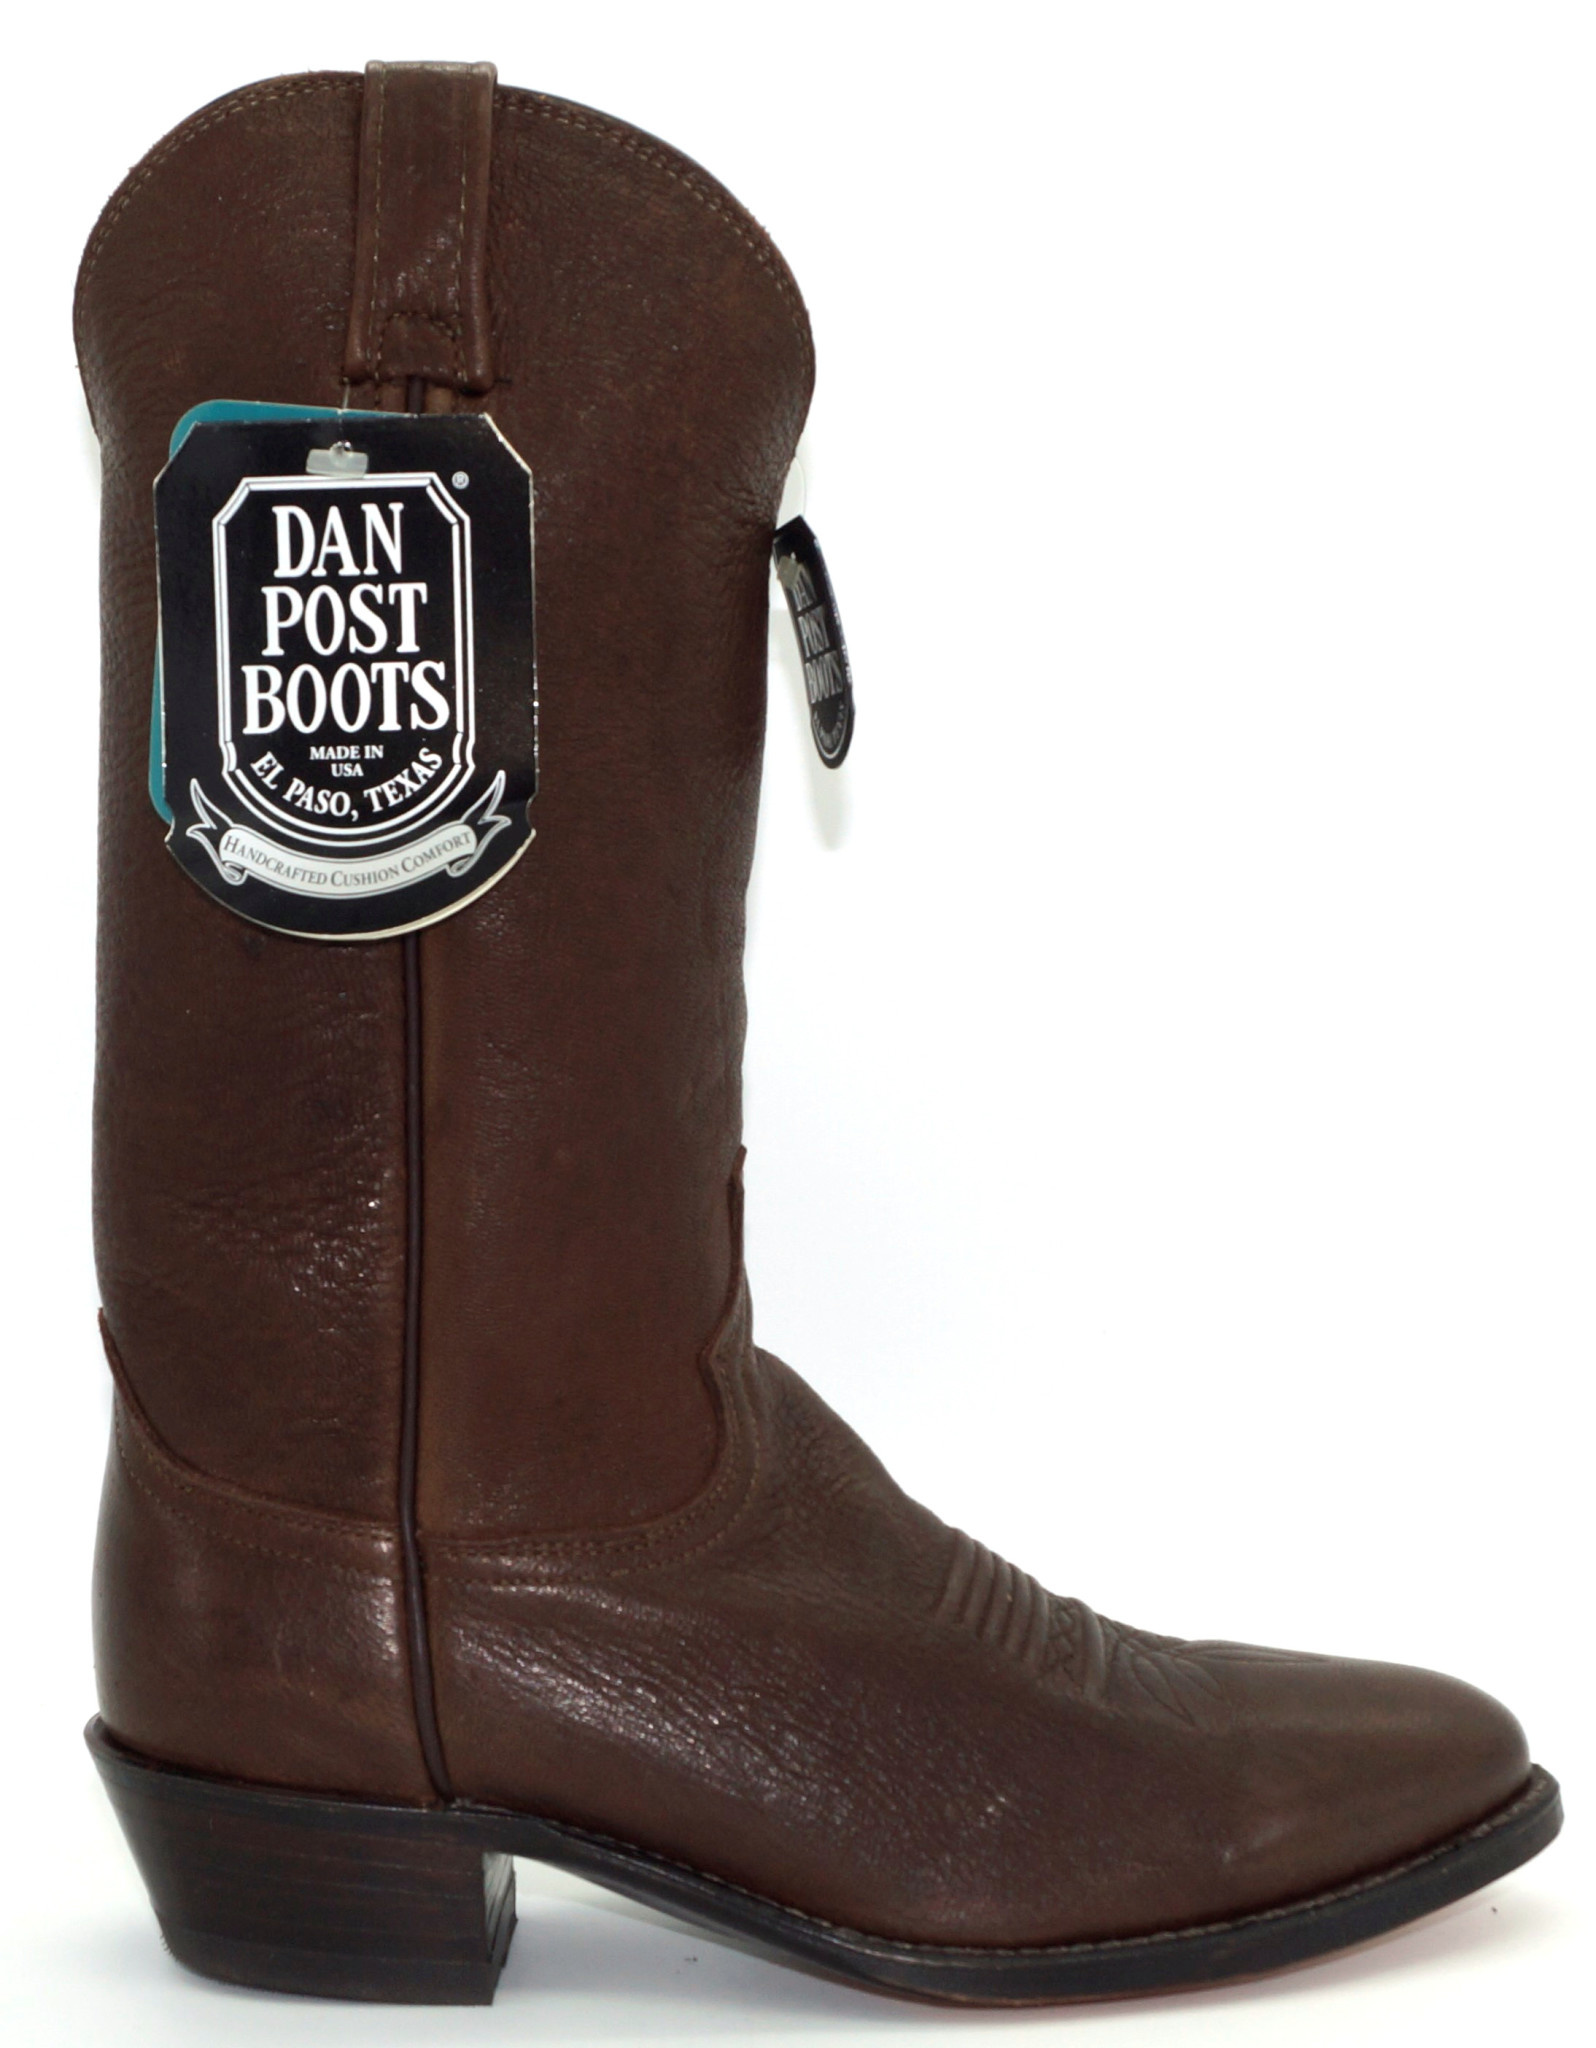 elk skin boots